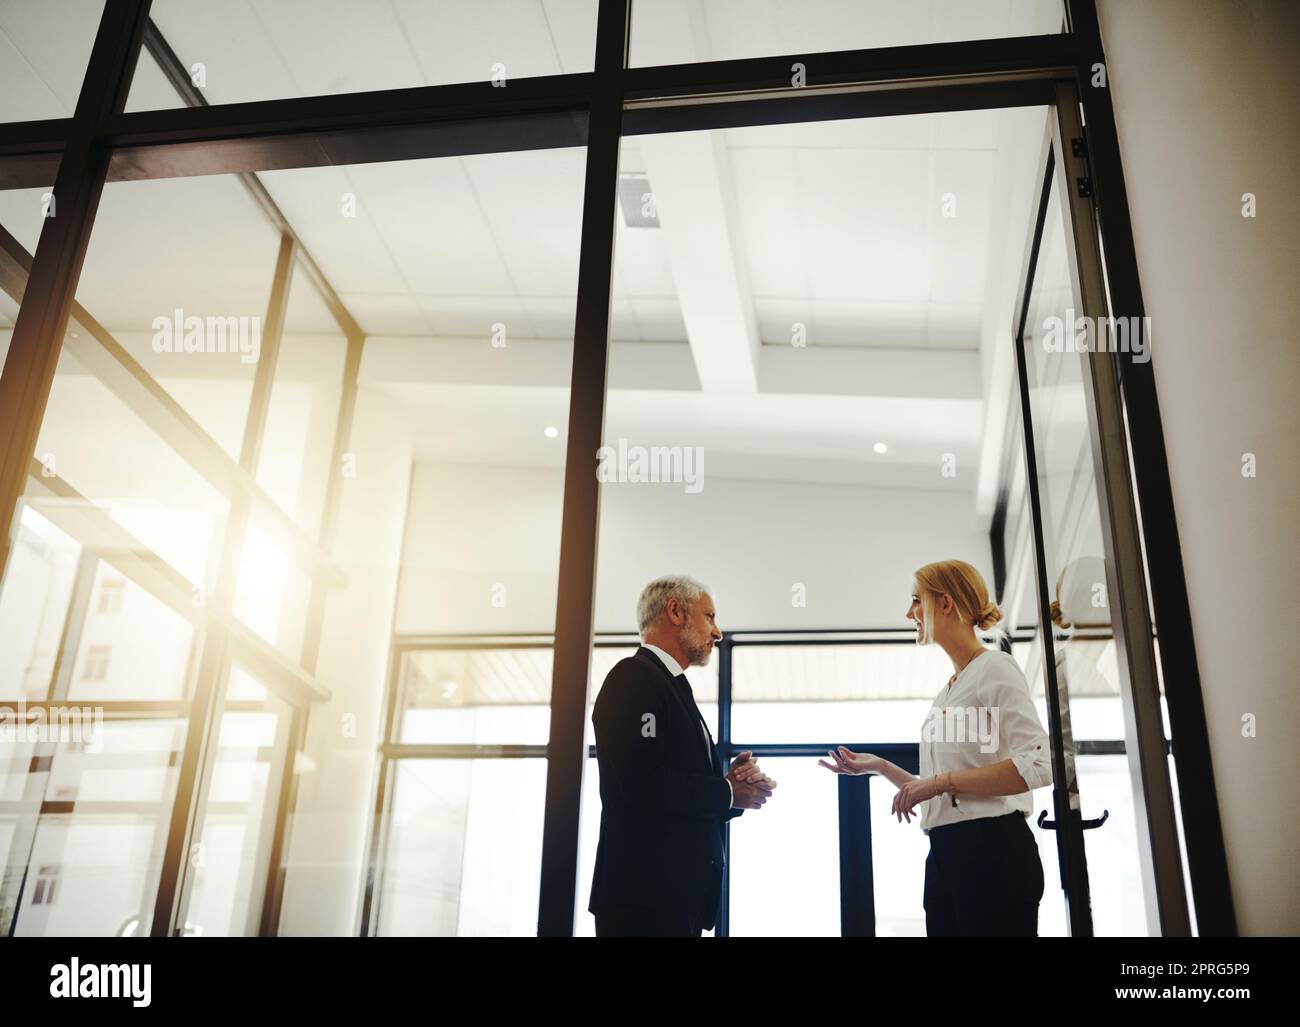 Auf der Suche nach Rat von ihrem Mentor. Zwei Geschäftsleute, die im Büro stehen, sprechen. Stockfoto